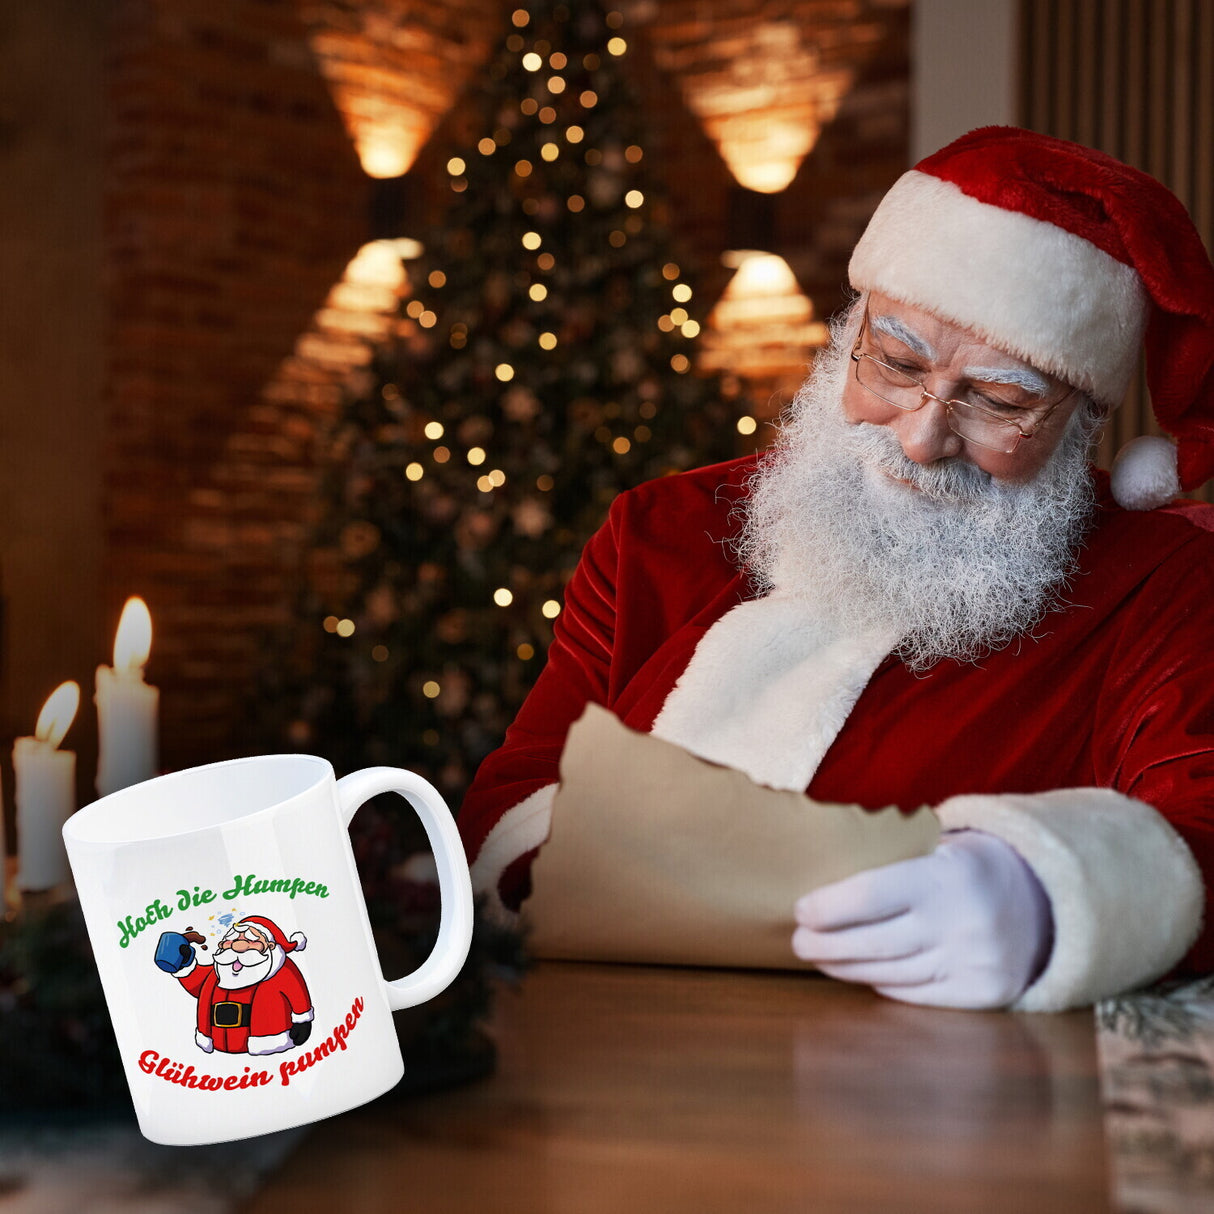 Kaffeebecher mit betrunkenem Weihnachtsmann - Hoch die Humpen, Glühwein pumpen